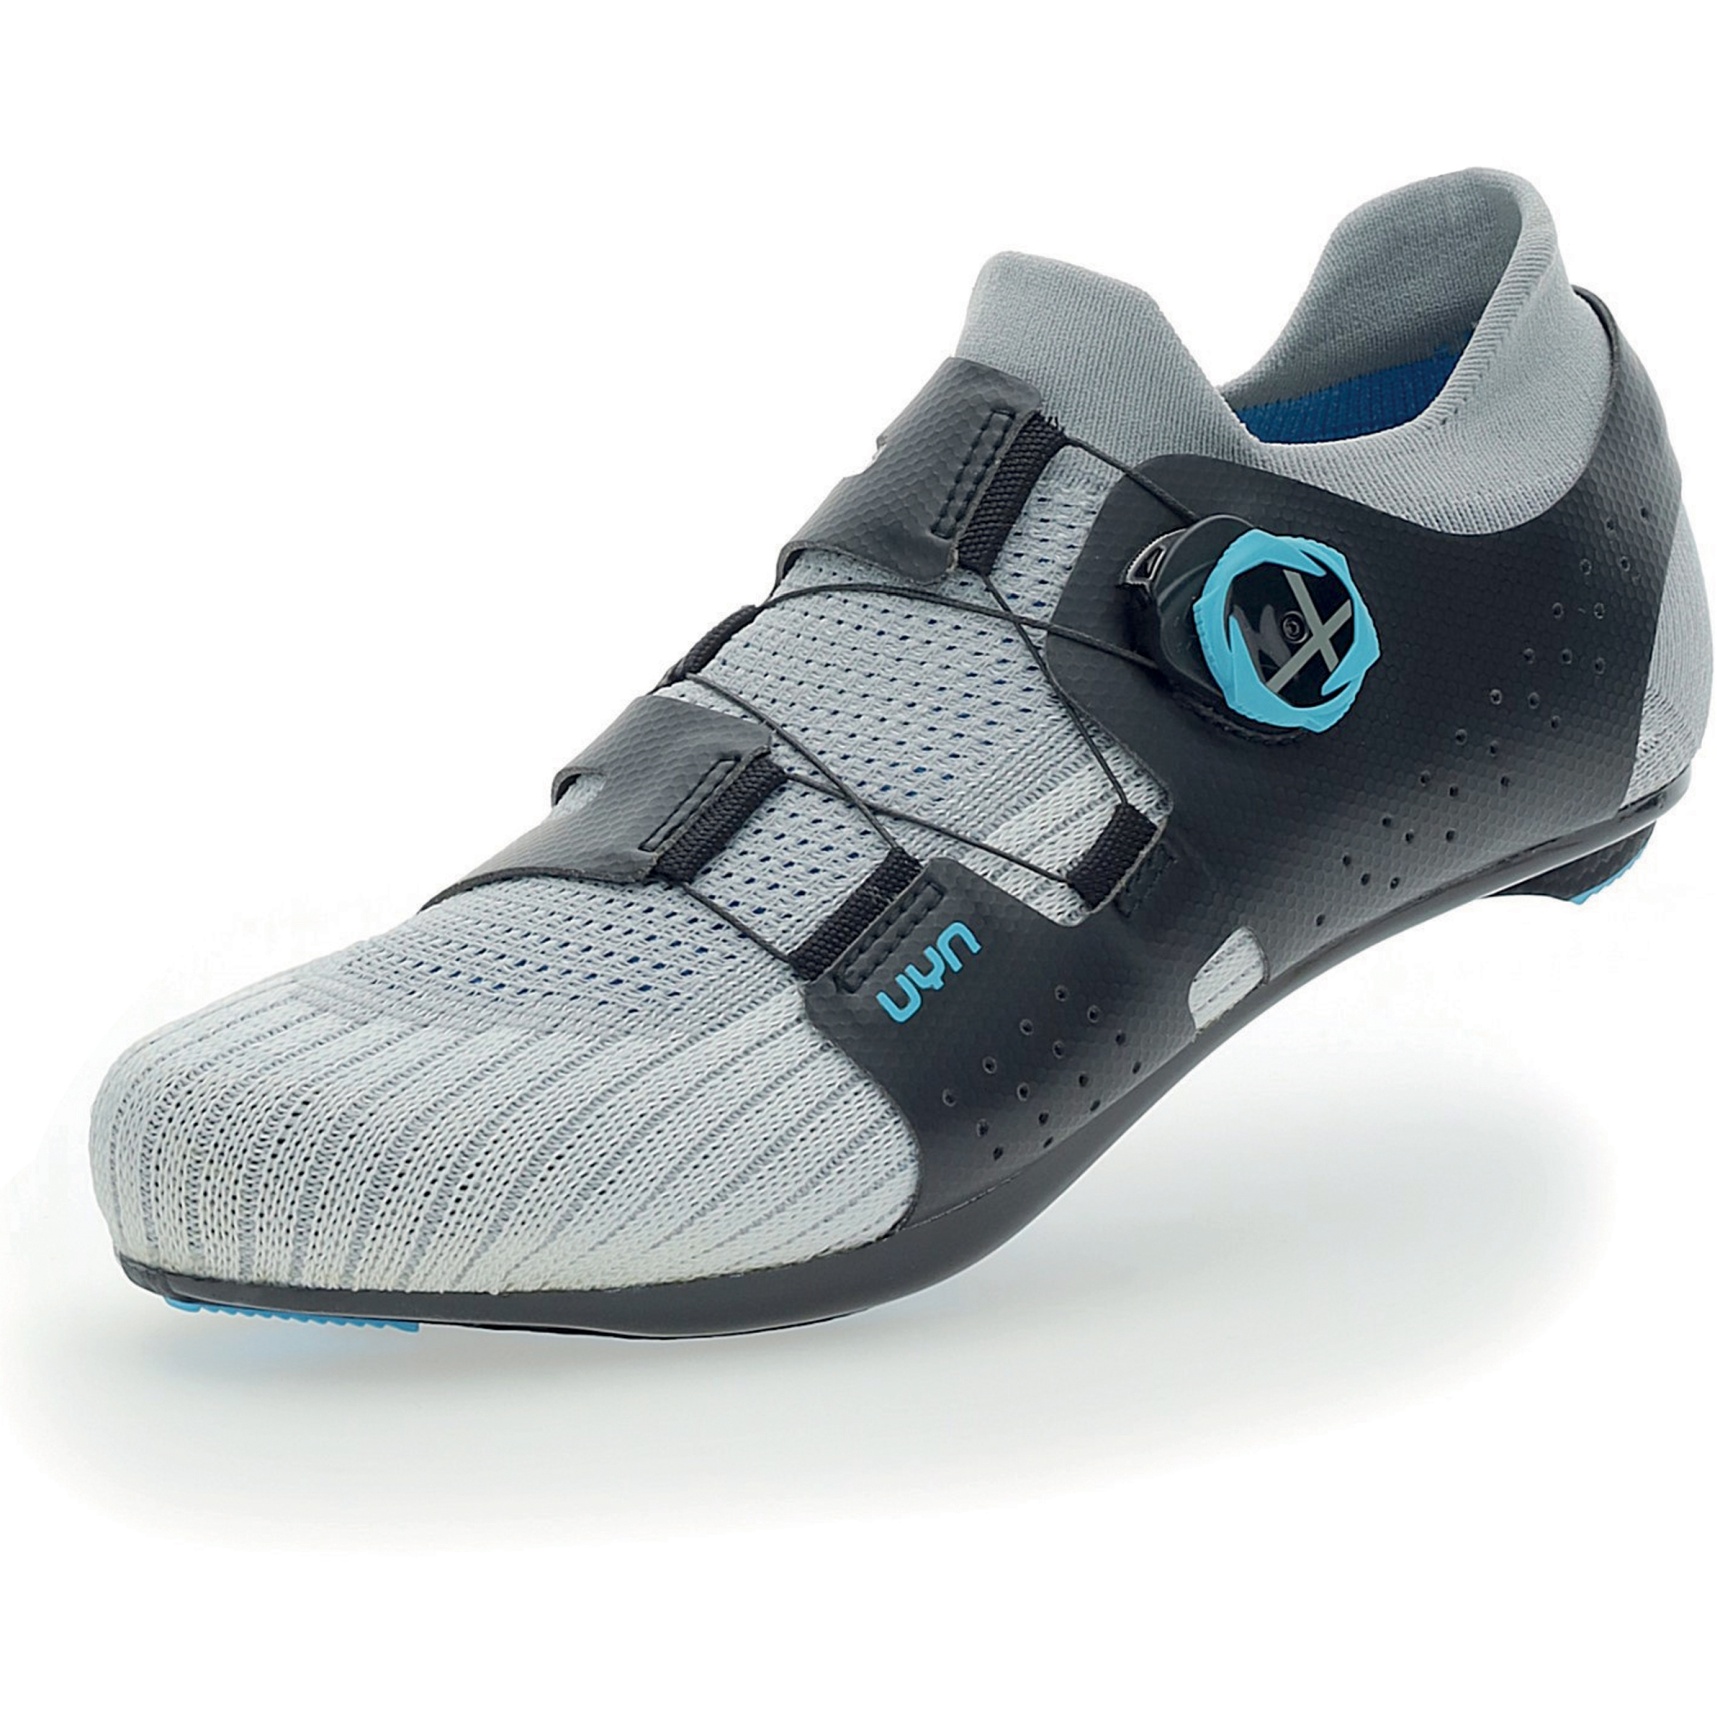 Productfoto van UYN Naked Carbon Racefietsschoenen - Zilver/Blauw